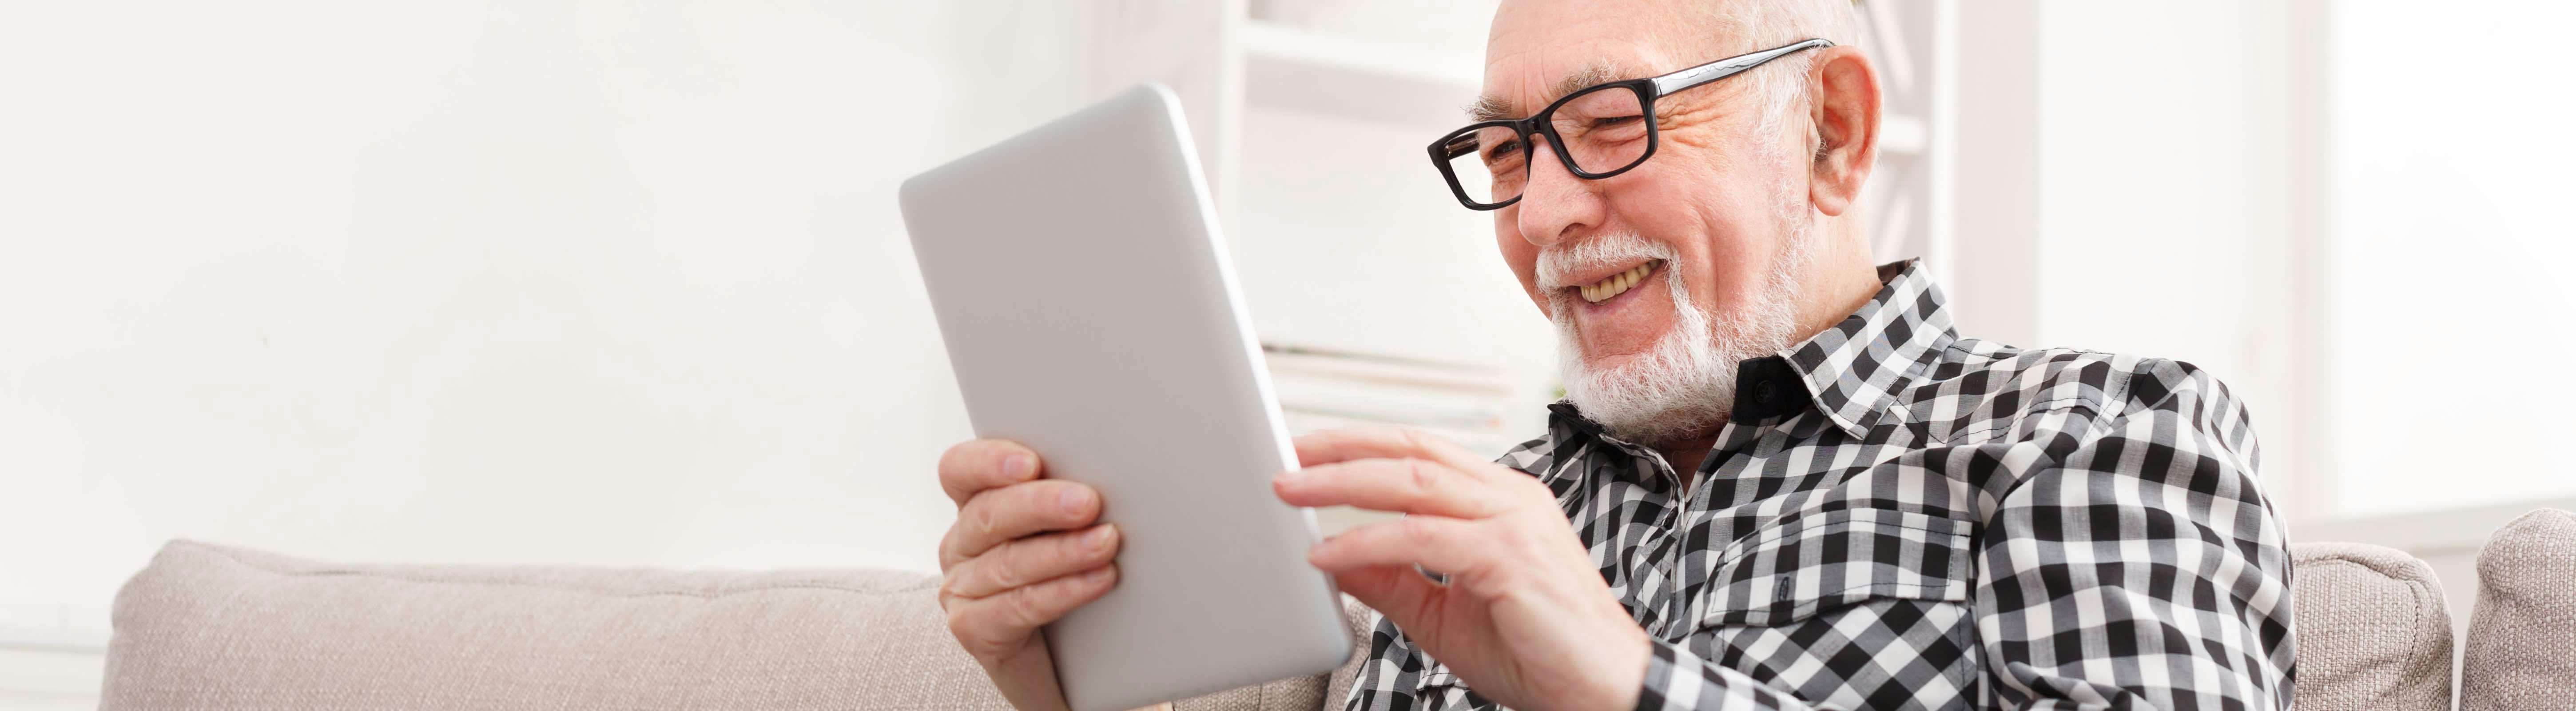 Man zit lachend op de bank met een tablet in zijn hand. Toekomstbestendig wonen, nu en later.